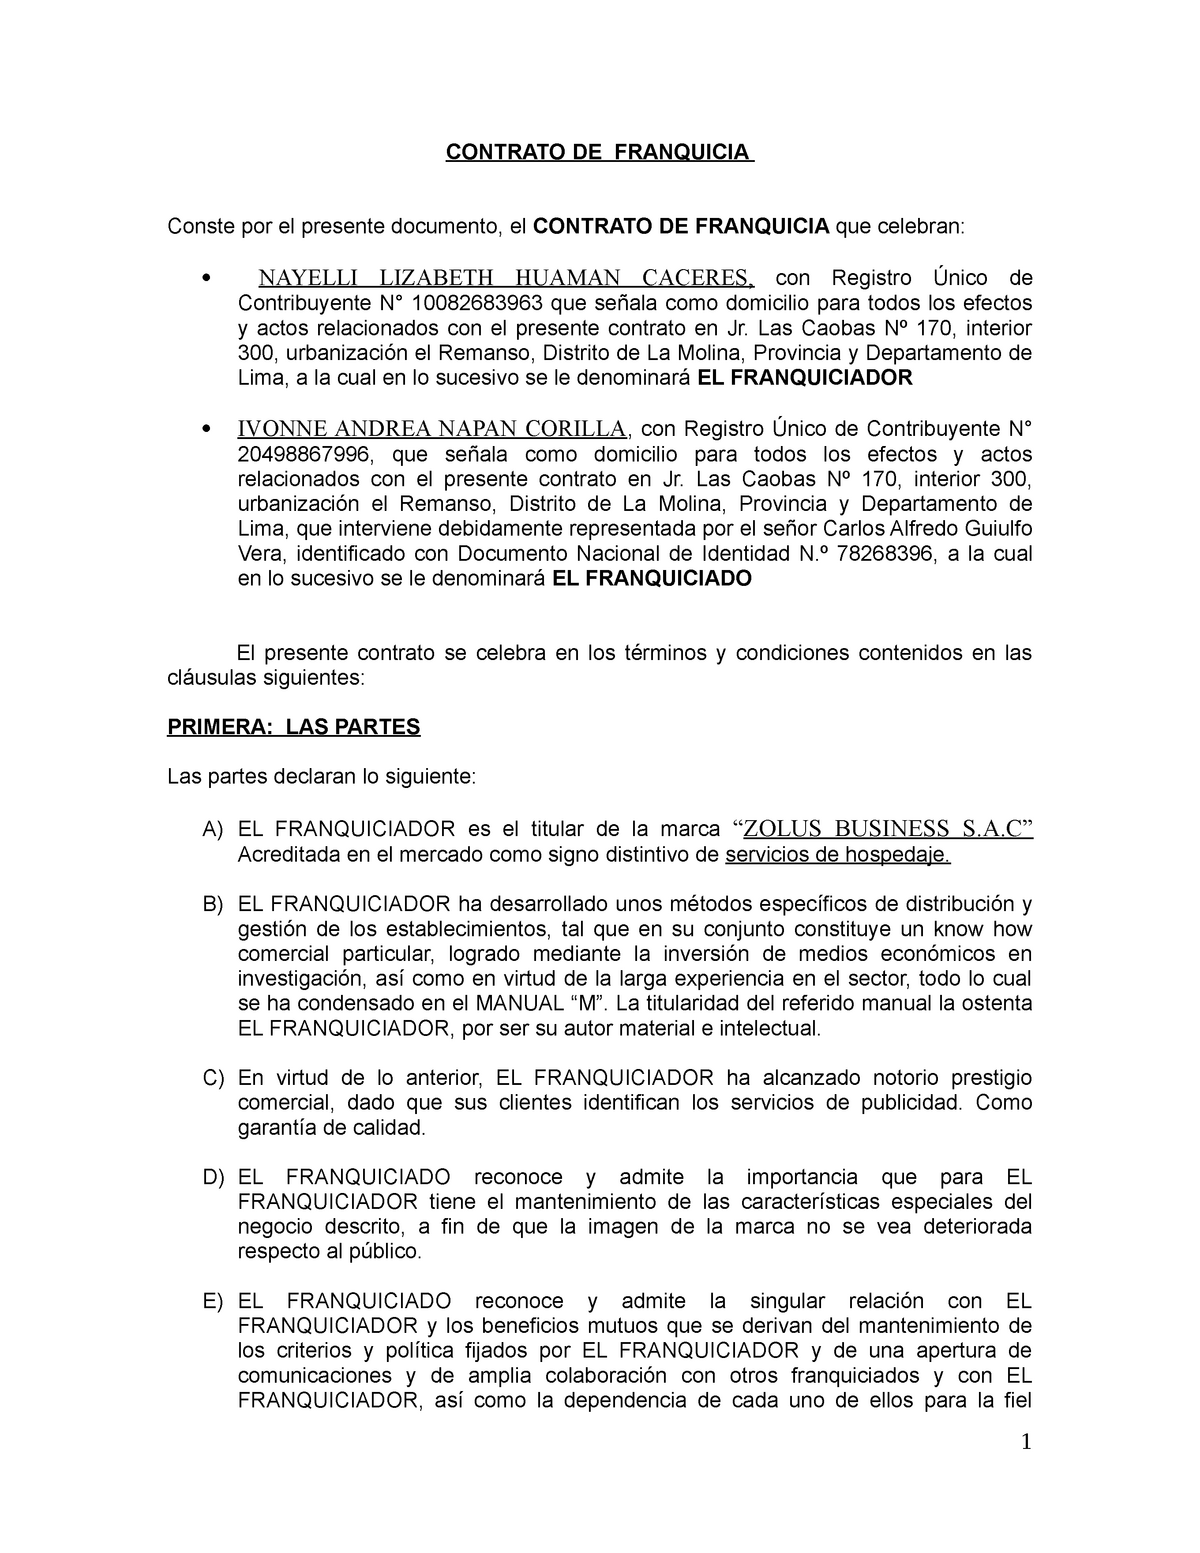 Contrato De Franquicia Contrato De Franquicia Conste Por El Presente Documento El Contrato De 3230